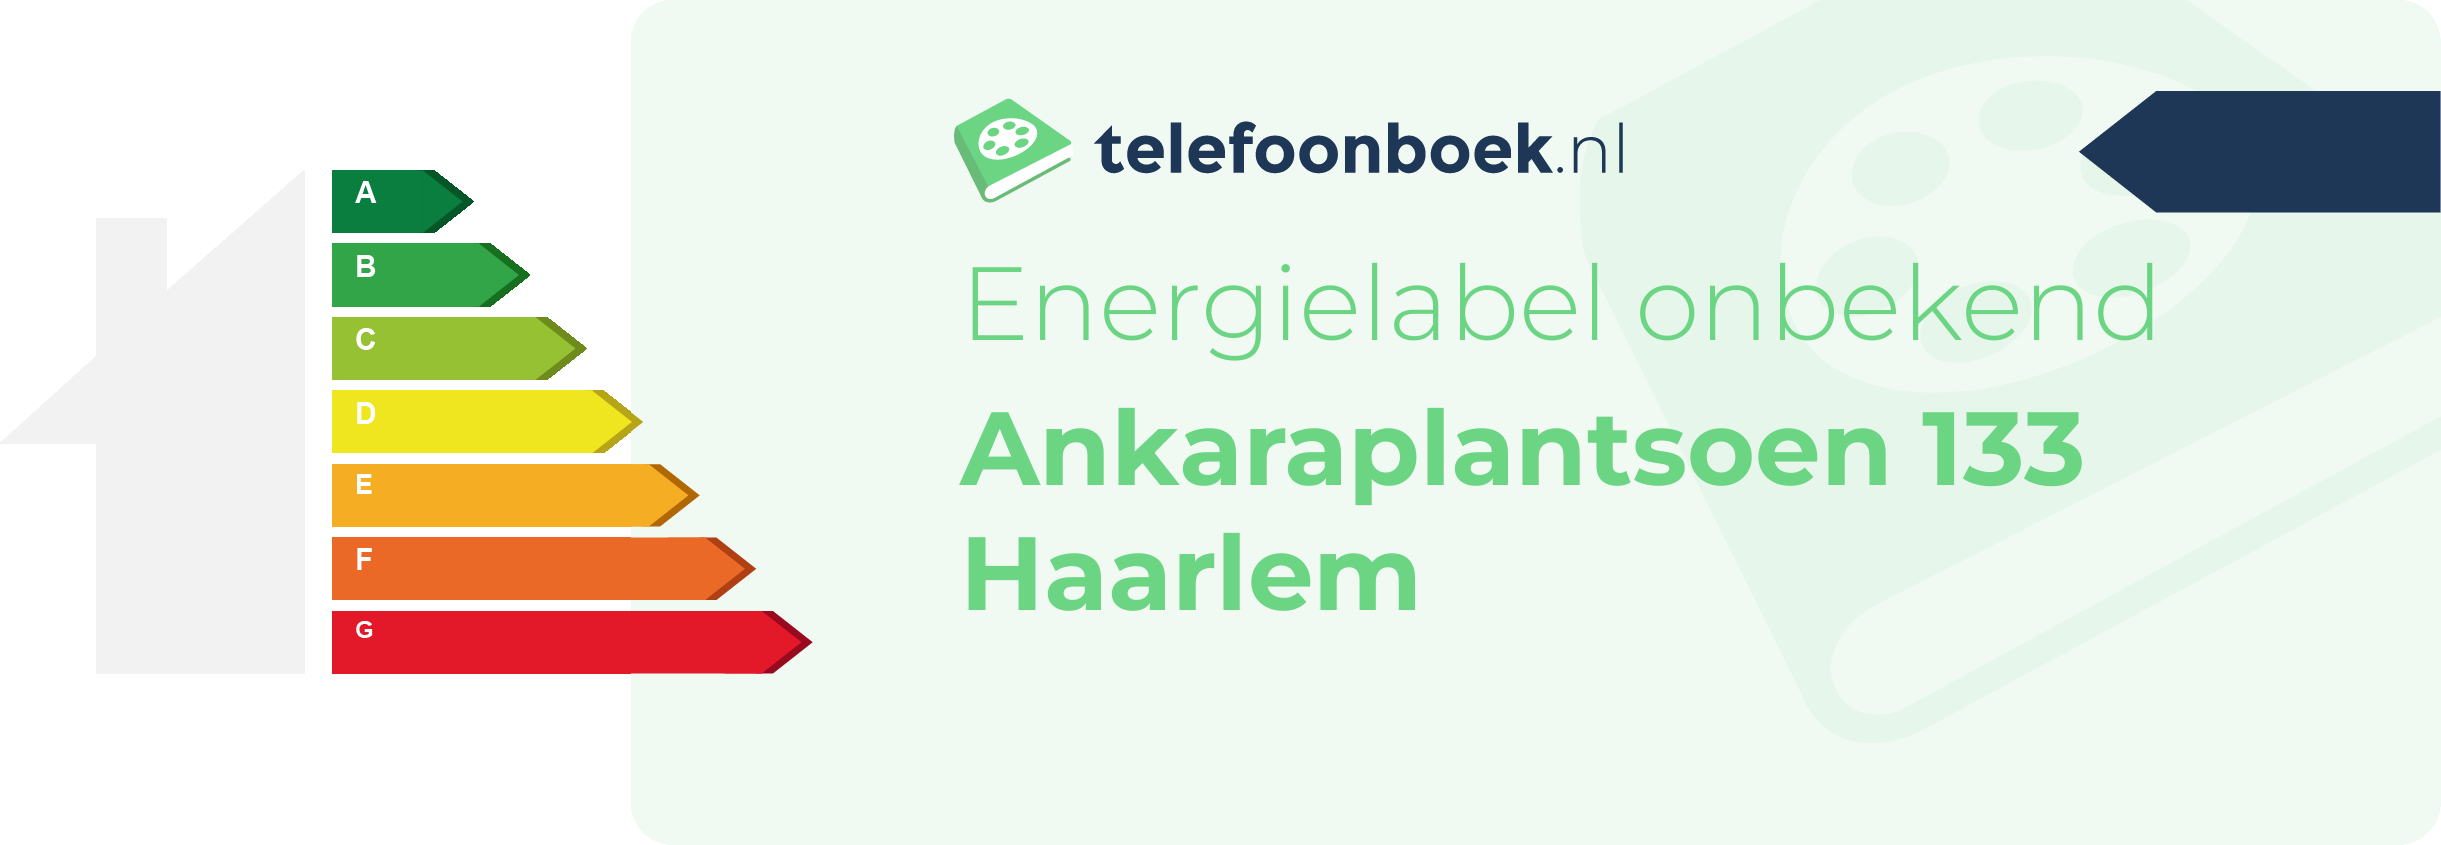 Energielabel Ankaraplantsoen 133 Haarlem